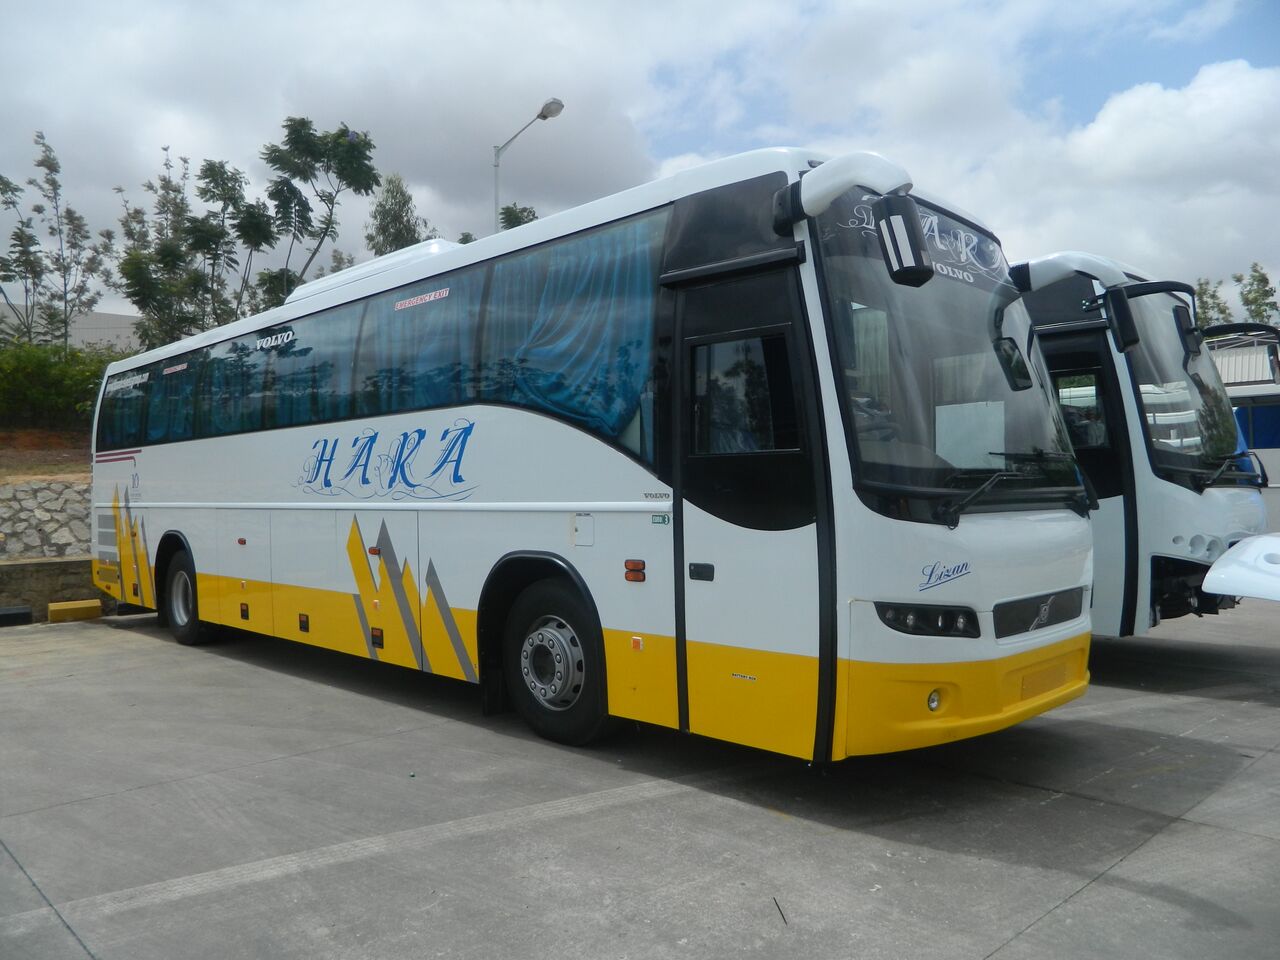 Hara bus